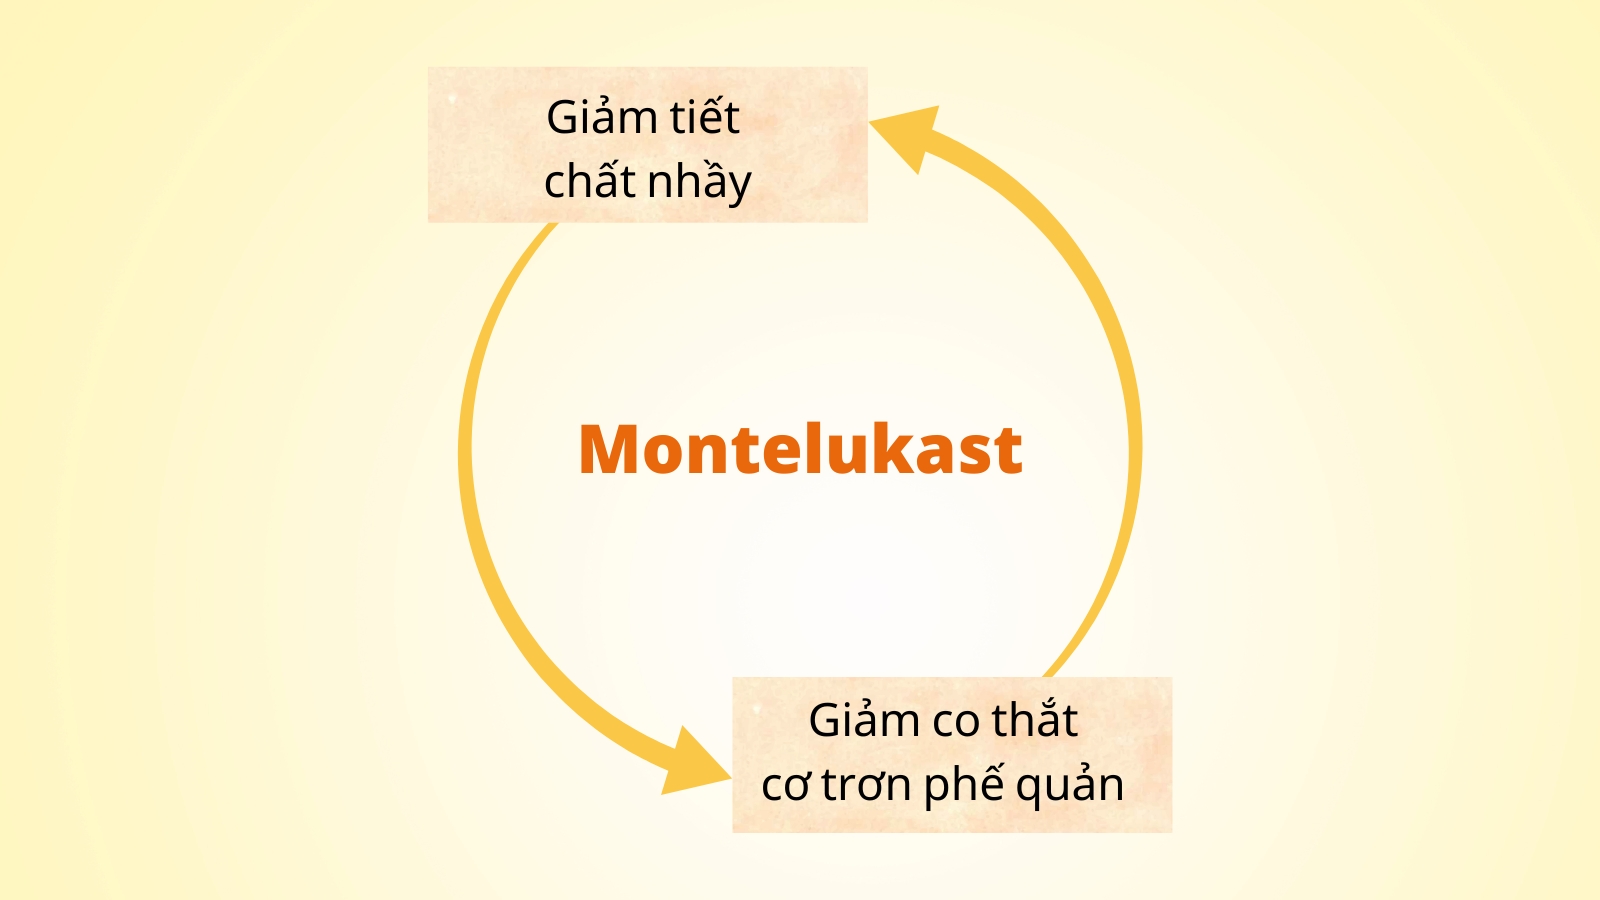 Montelukast giúp làm giảm việc co thắt của cơ trơn trong phế quản và giảm tiết chất nhầy